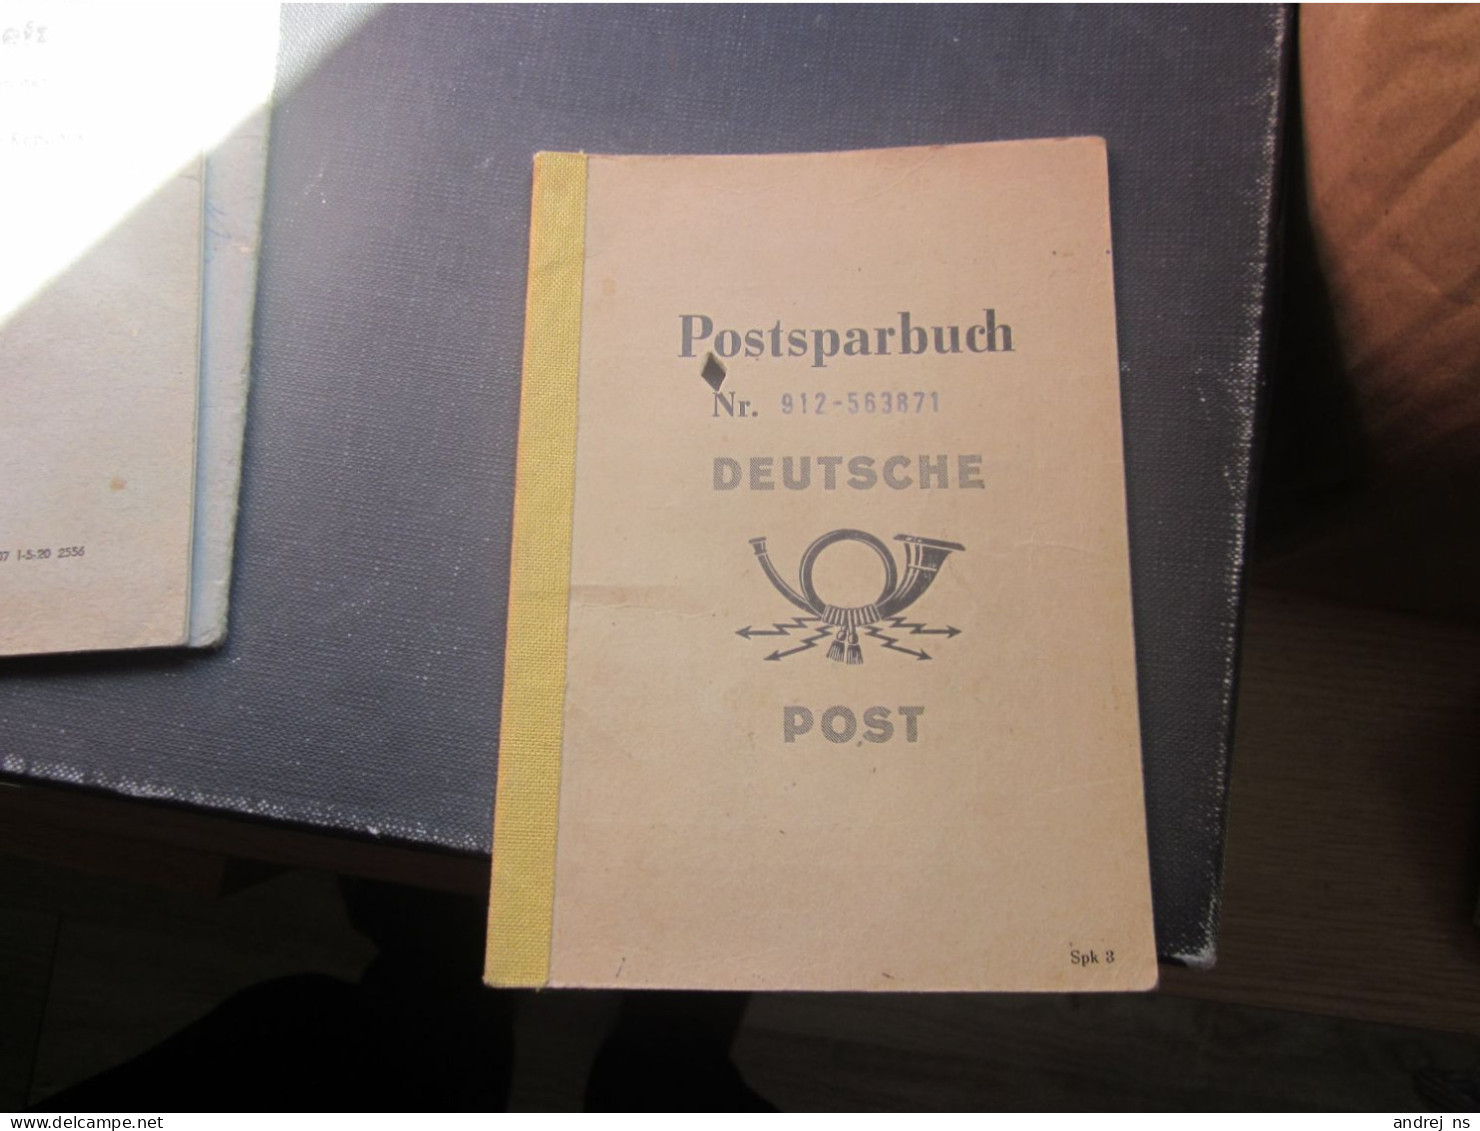 Postsparbuch Nr 912-563871  Deutsche Post - Historische Dokumente